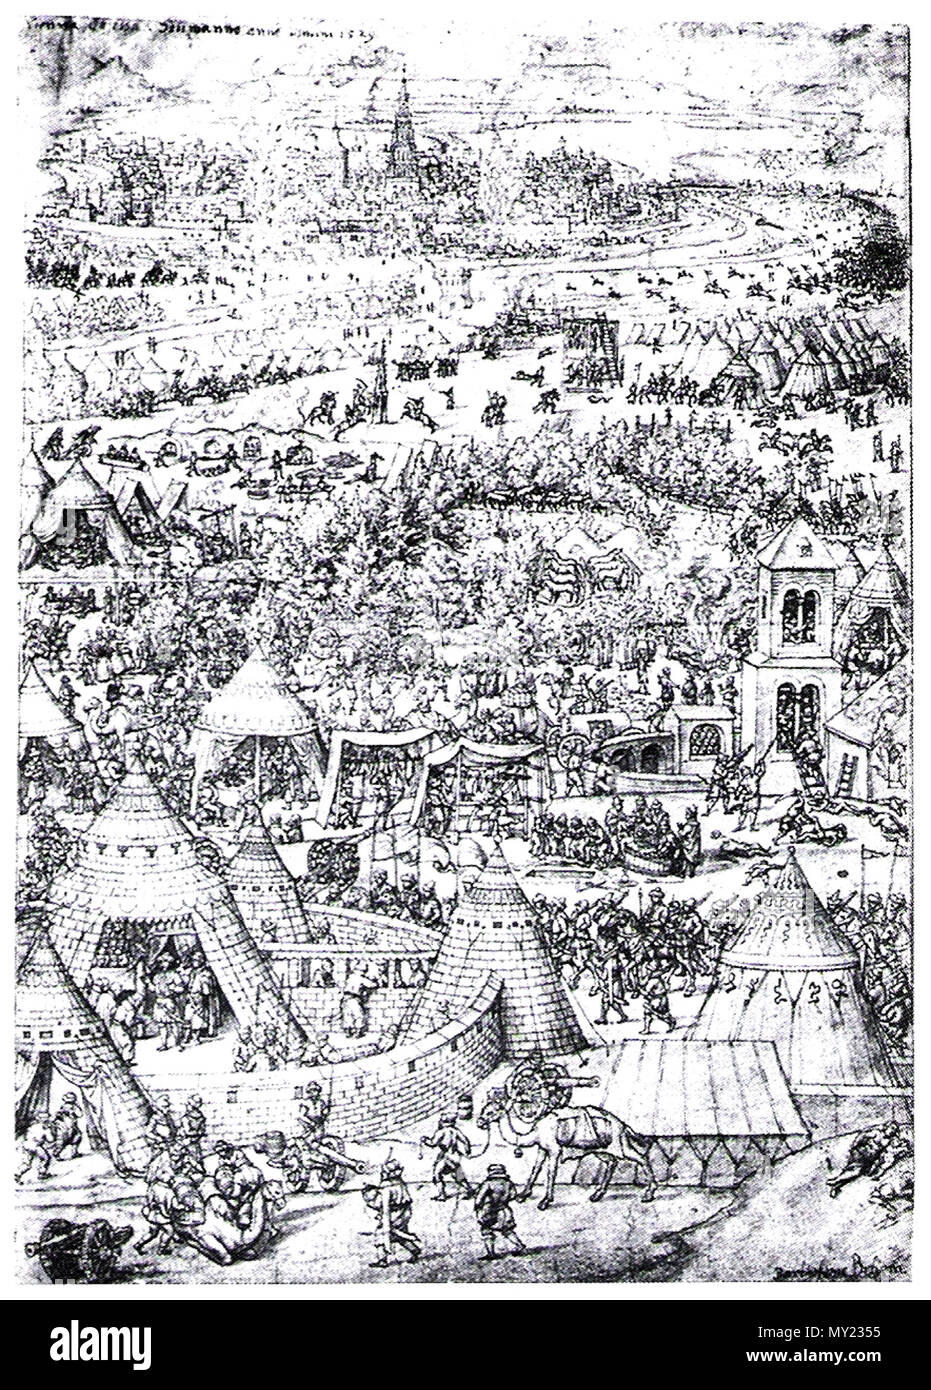 . English: en:Engraving of the Siege of Vienna (1529) Deutsch: Erste Wiener Türkenbelagerung, zeitgenössische Darstellung von Bartholomäus Beham (1502-1540) . Bartholomäus Beham 487 Siegeofvienna-1529 Stock Photo